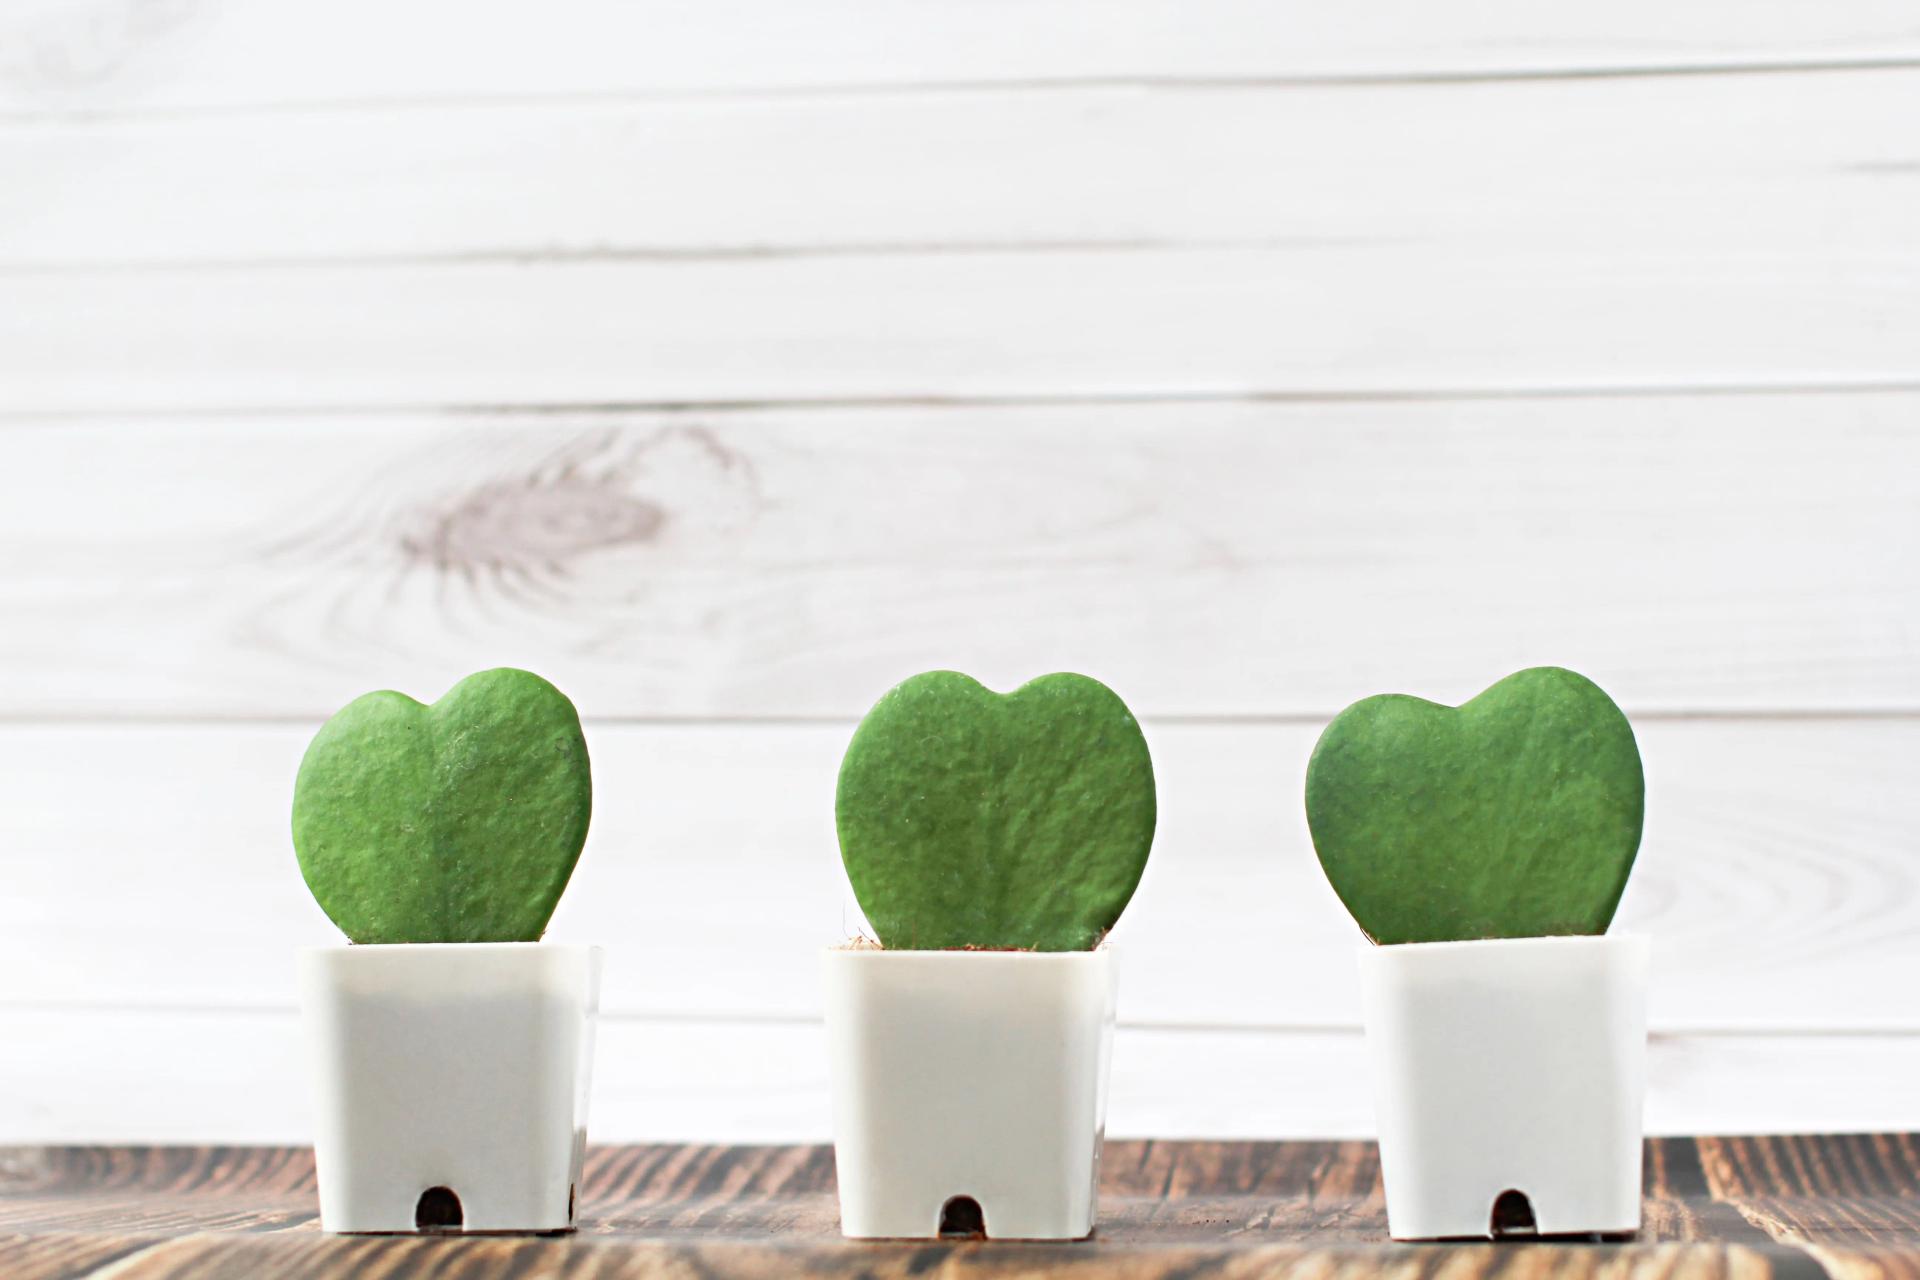 Three Hoya heart plants